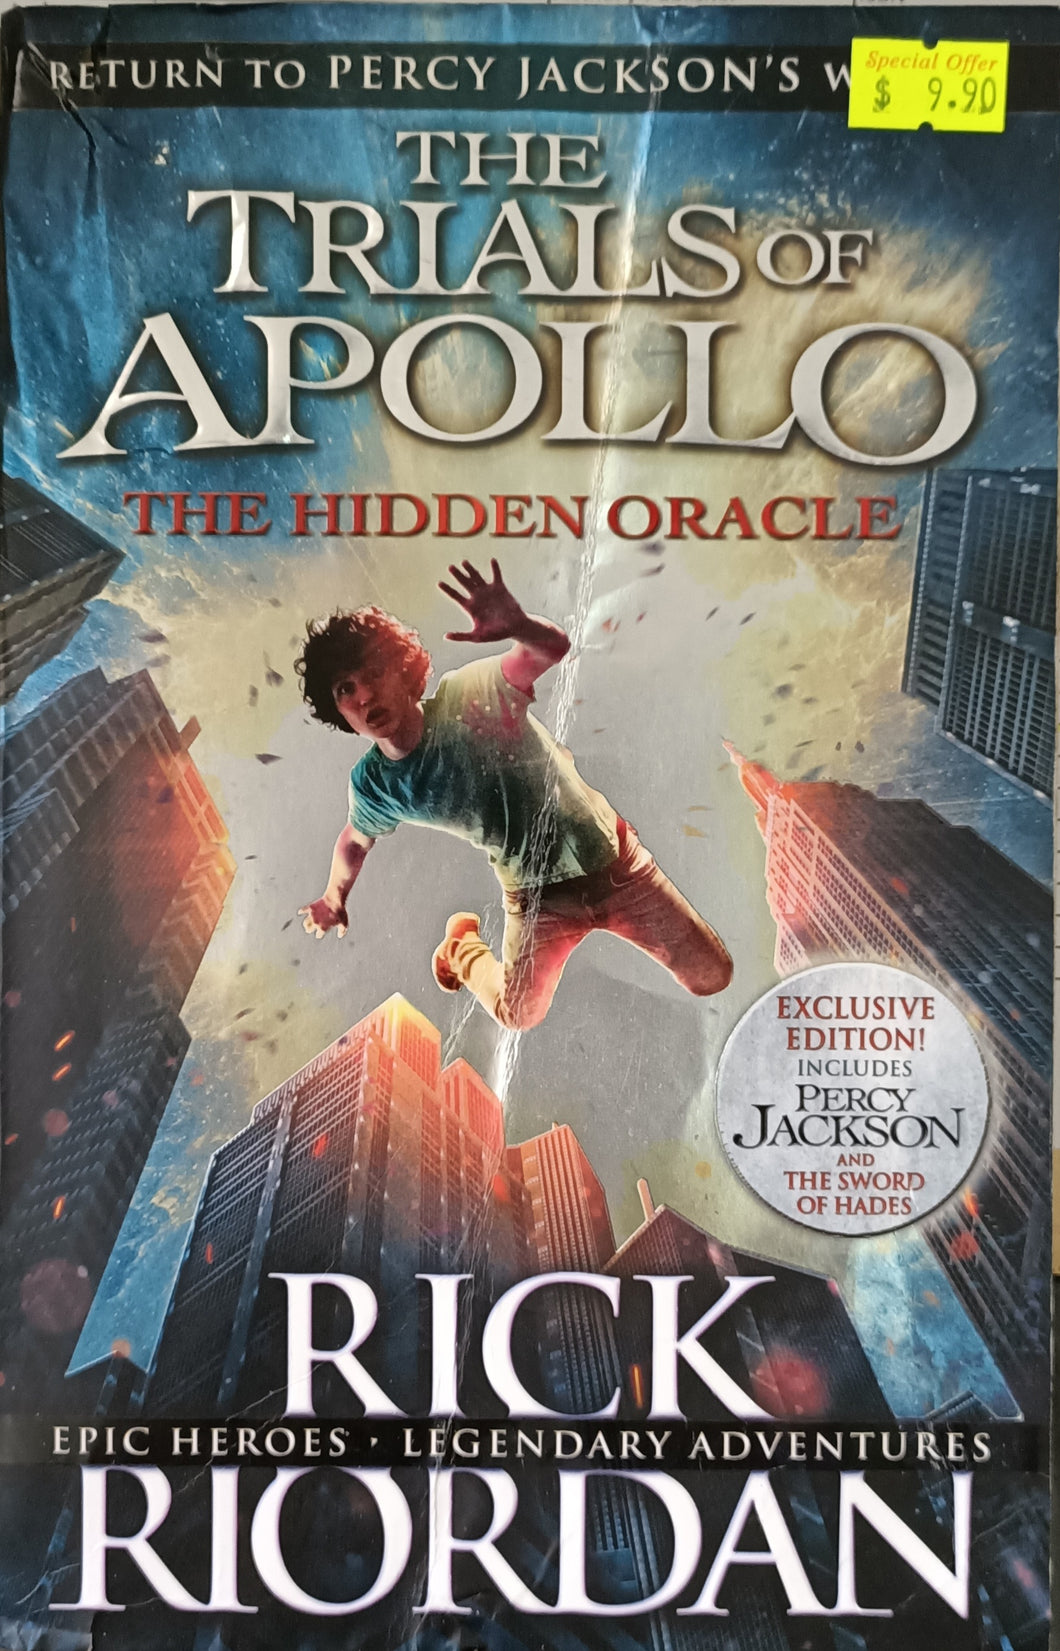 The Trials of Apollo Book: The Hidden Oracle - Rick Riordan